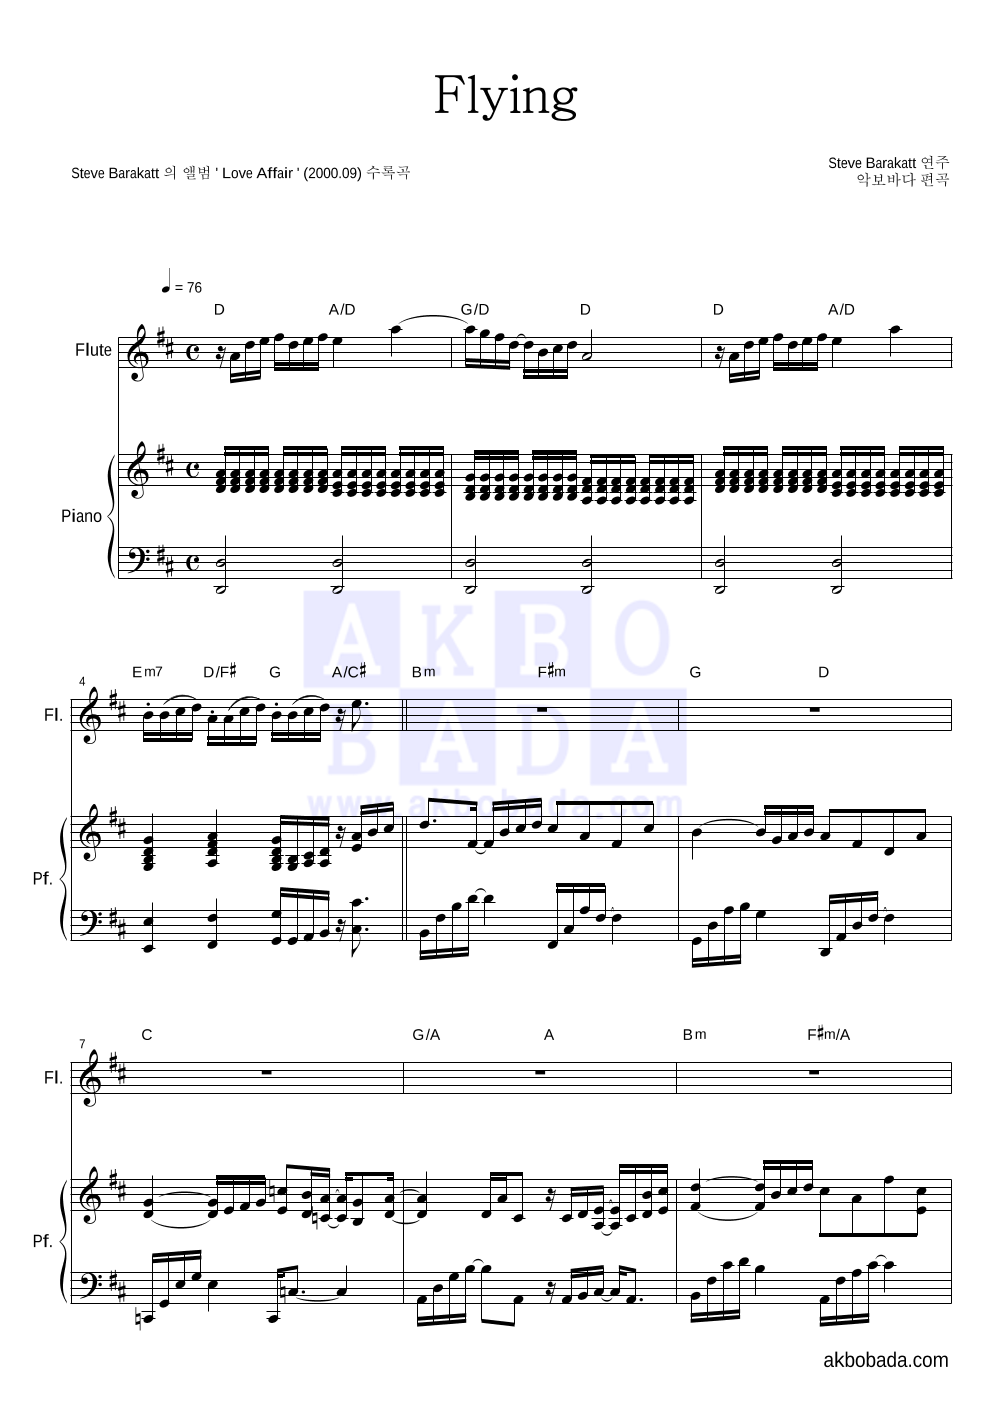 Steve Barakatt - Flying 플룻&피아노 악보 